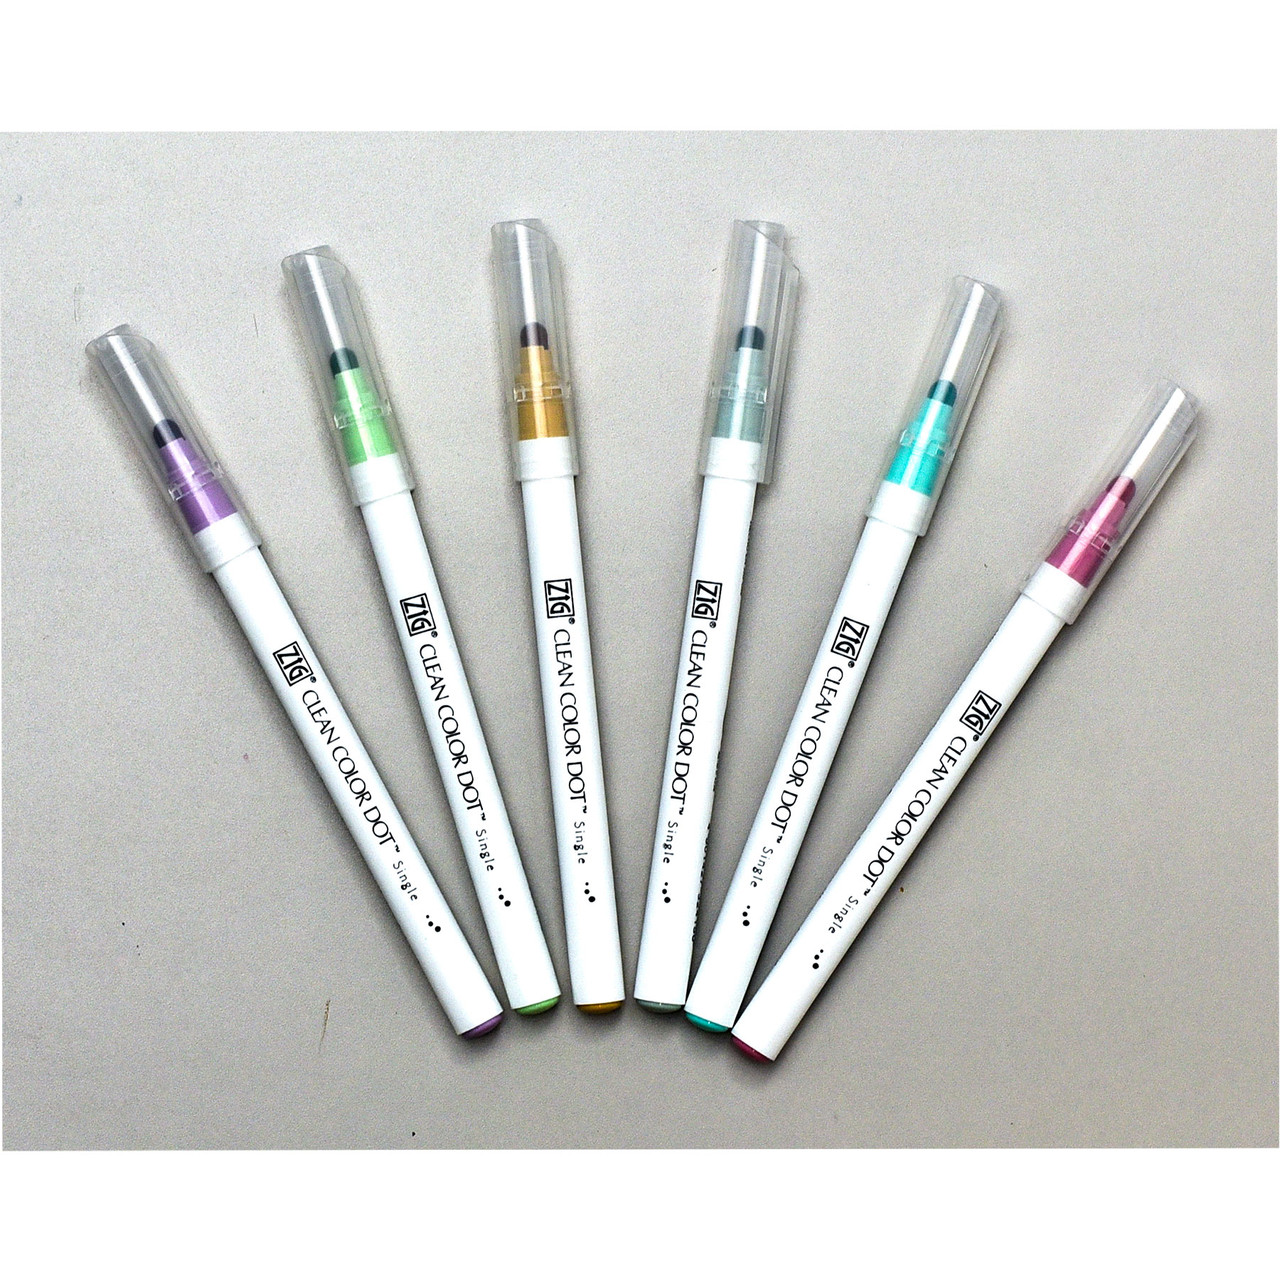 Zig Clean Color Dot Single-Ended Marker, Set of 6 Mild Colors